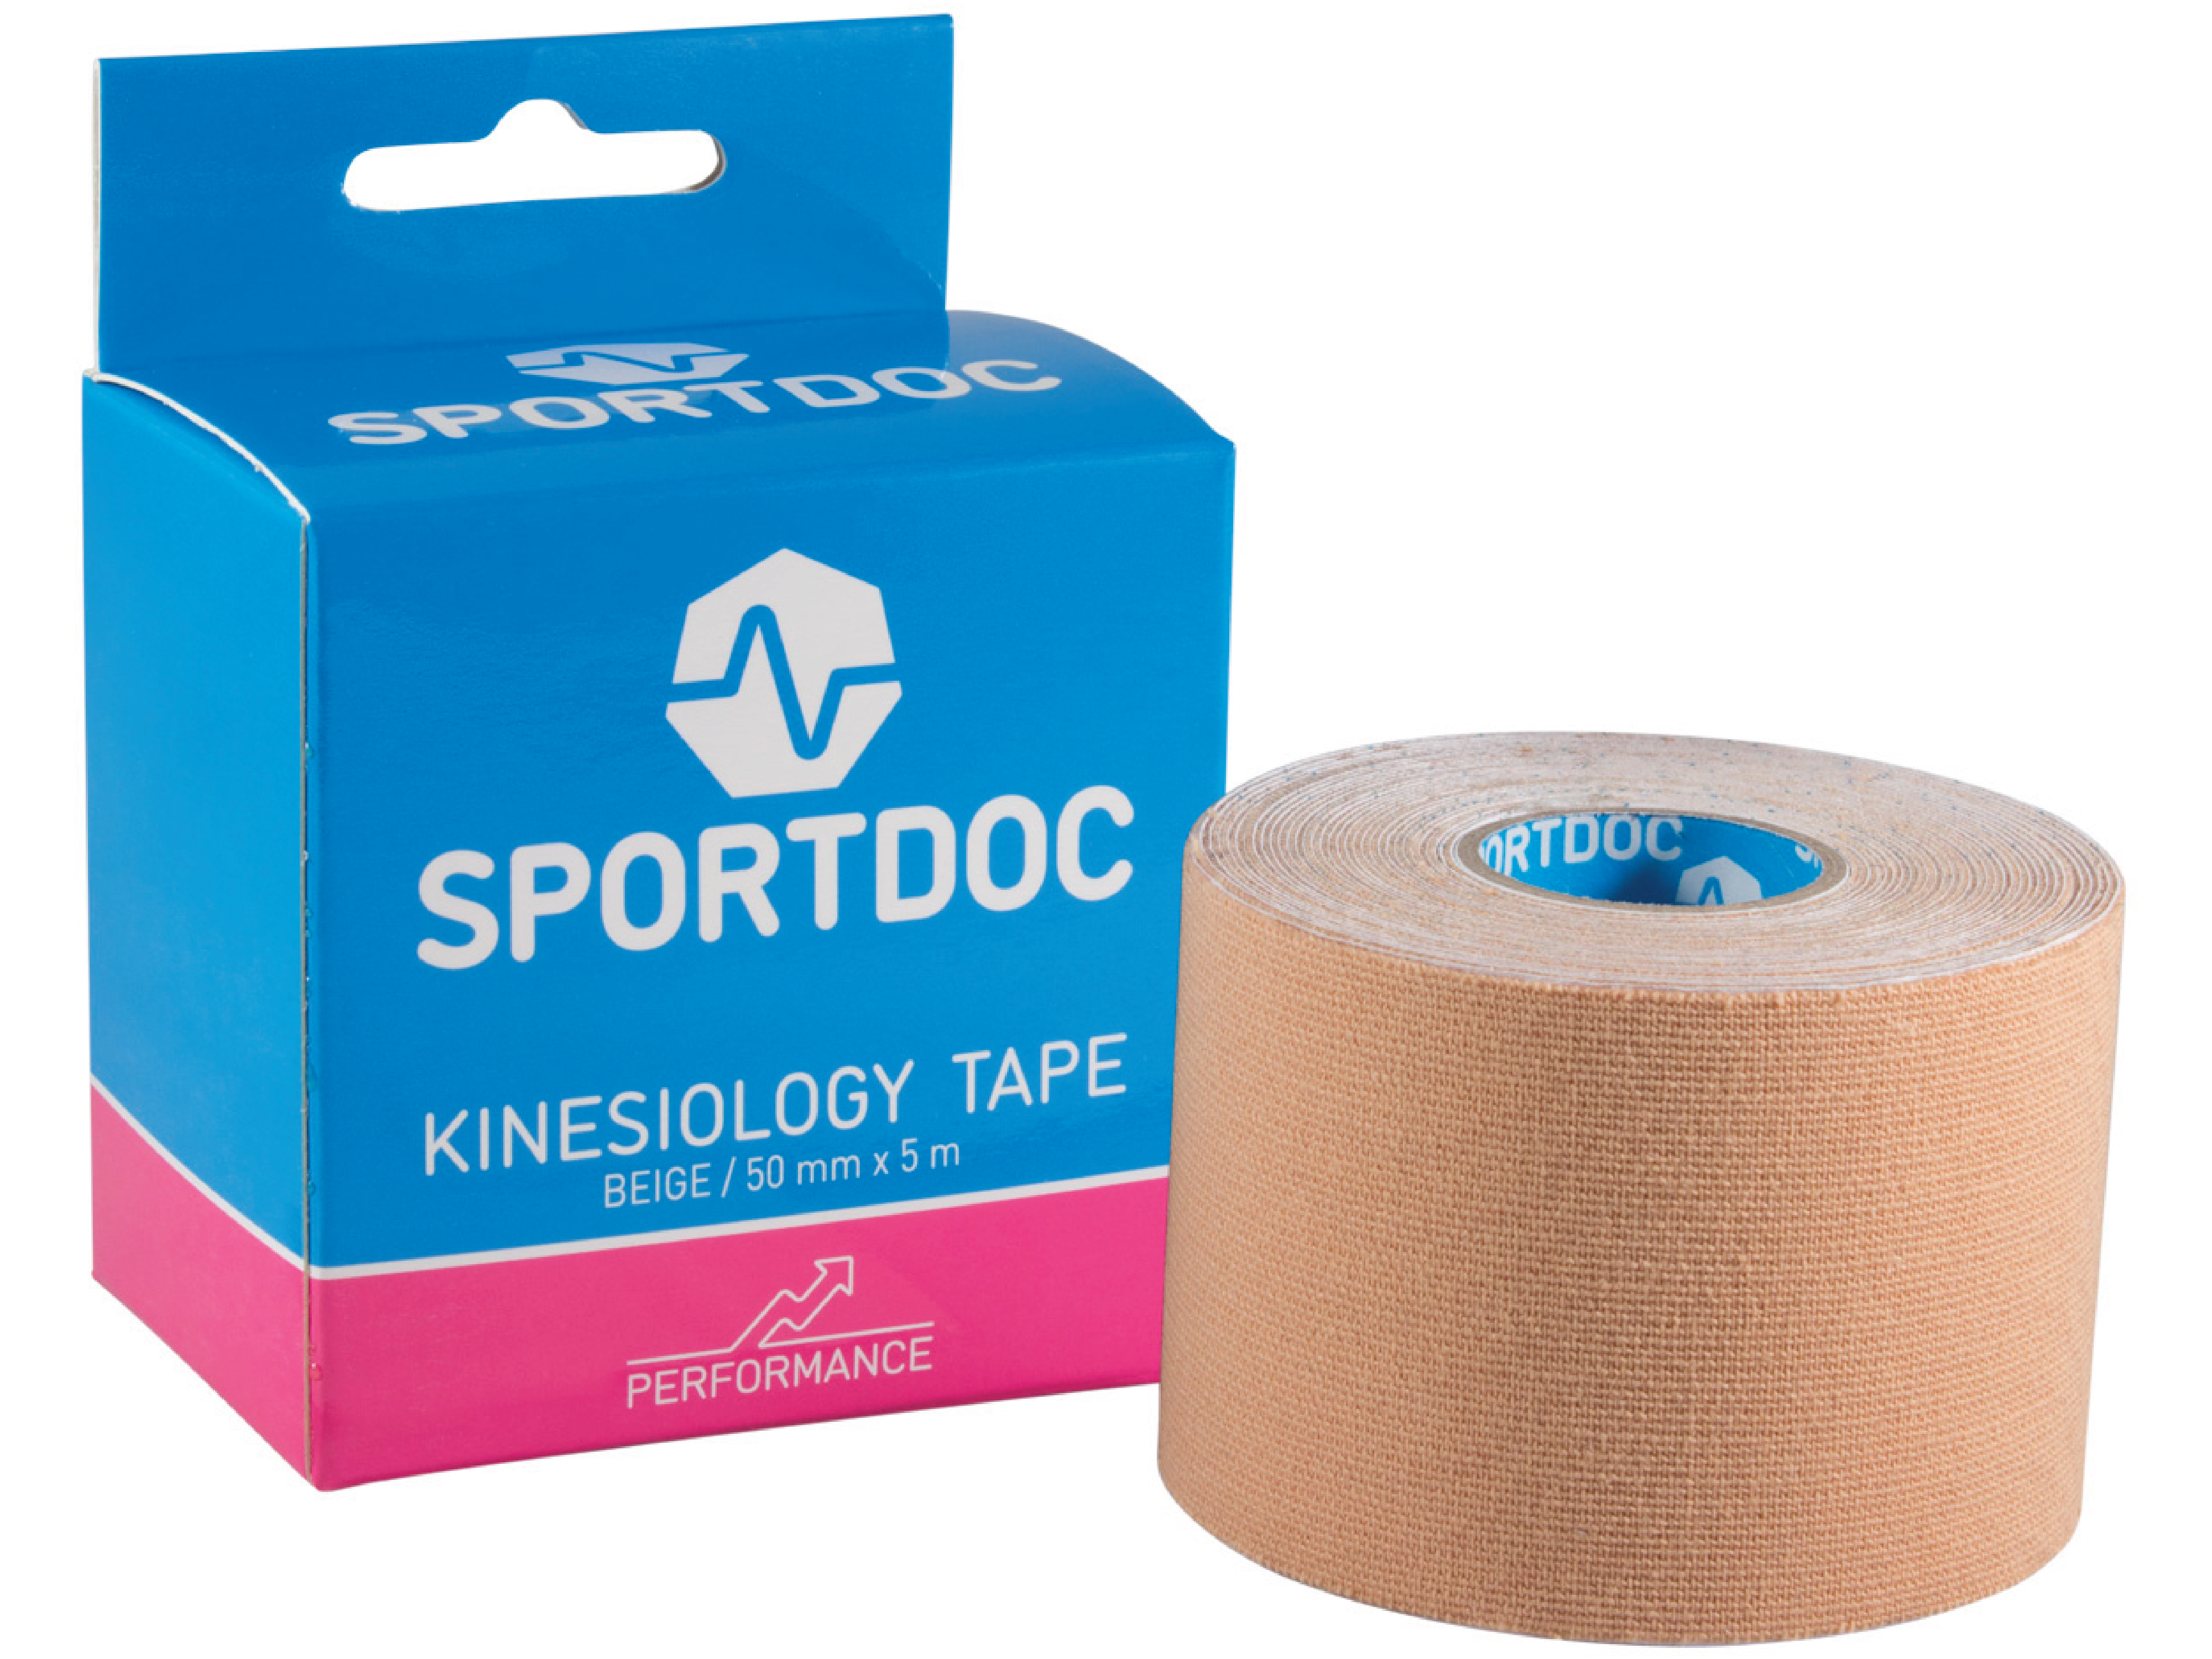 Sportdoc Kinesiology Tape, Beige, 50 mm x 5 m, 1 stk.